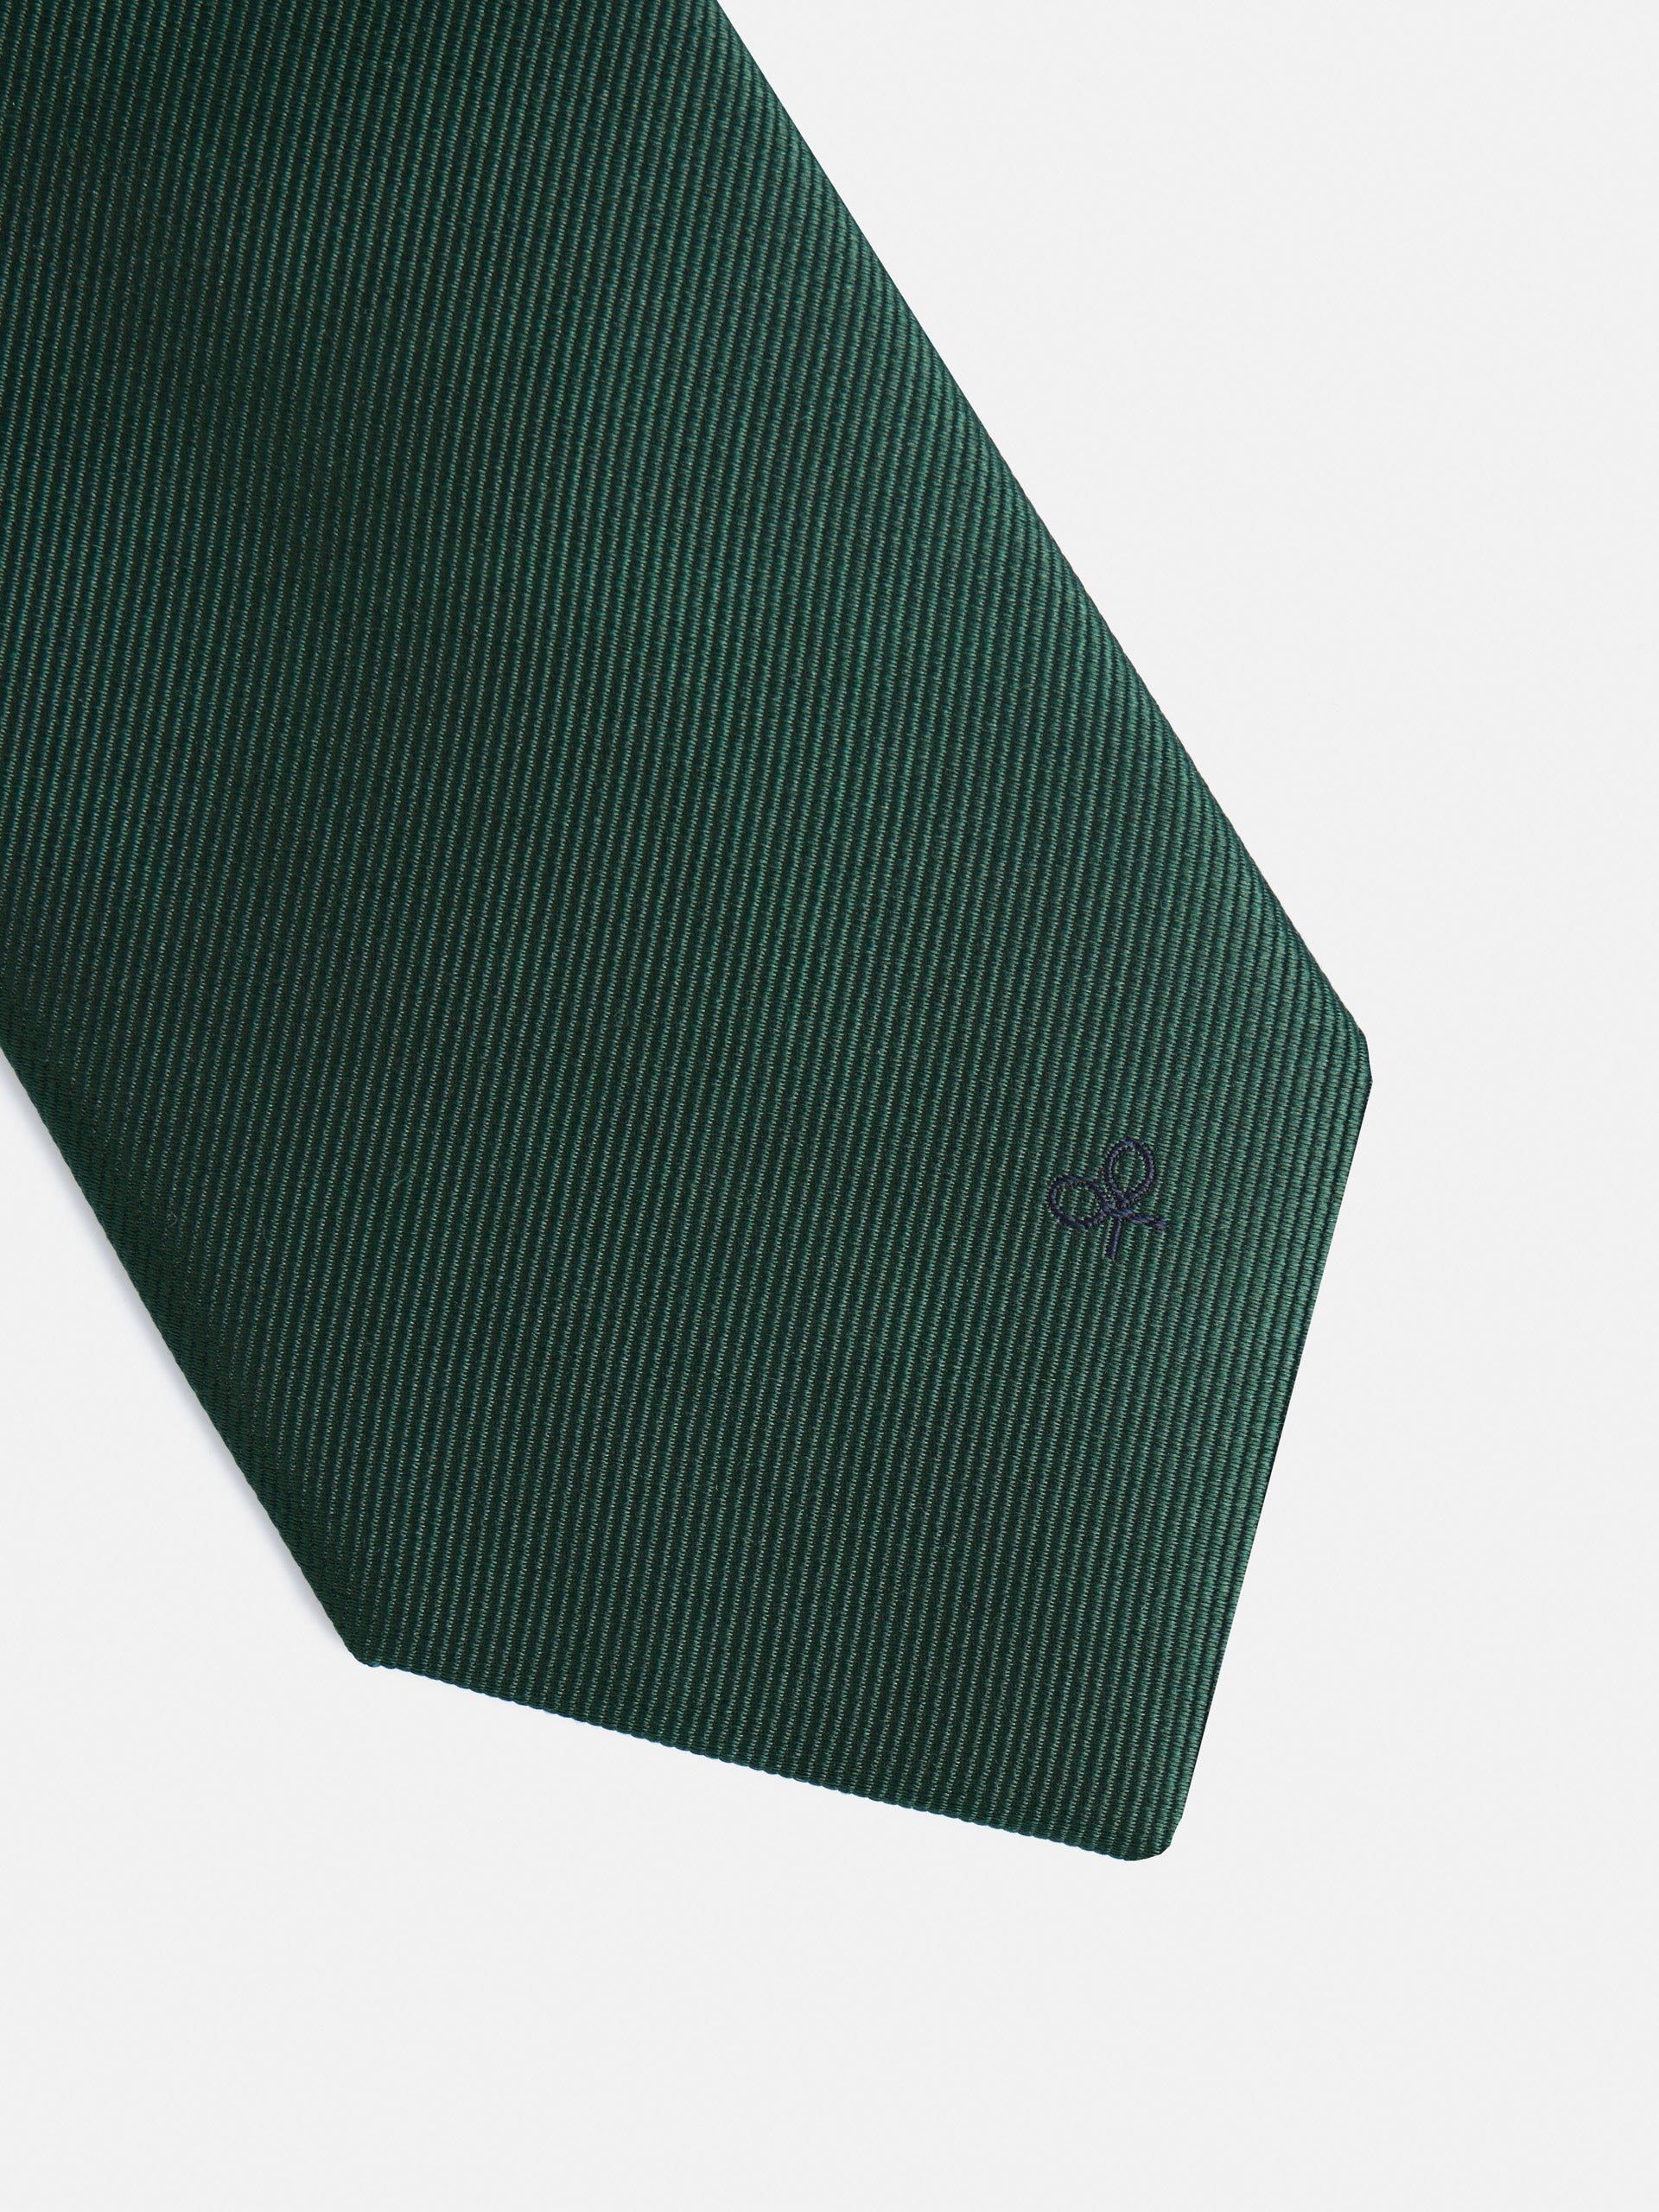 Corbata silbon lisa verde